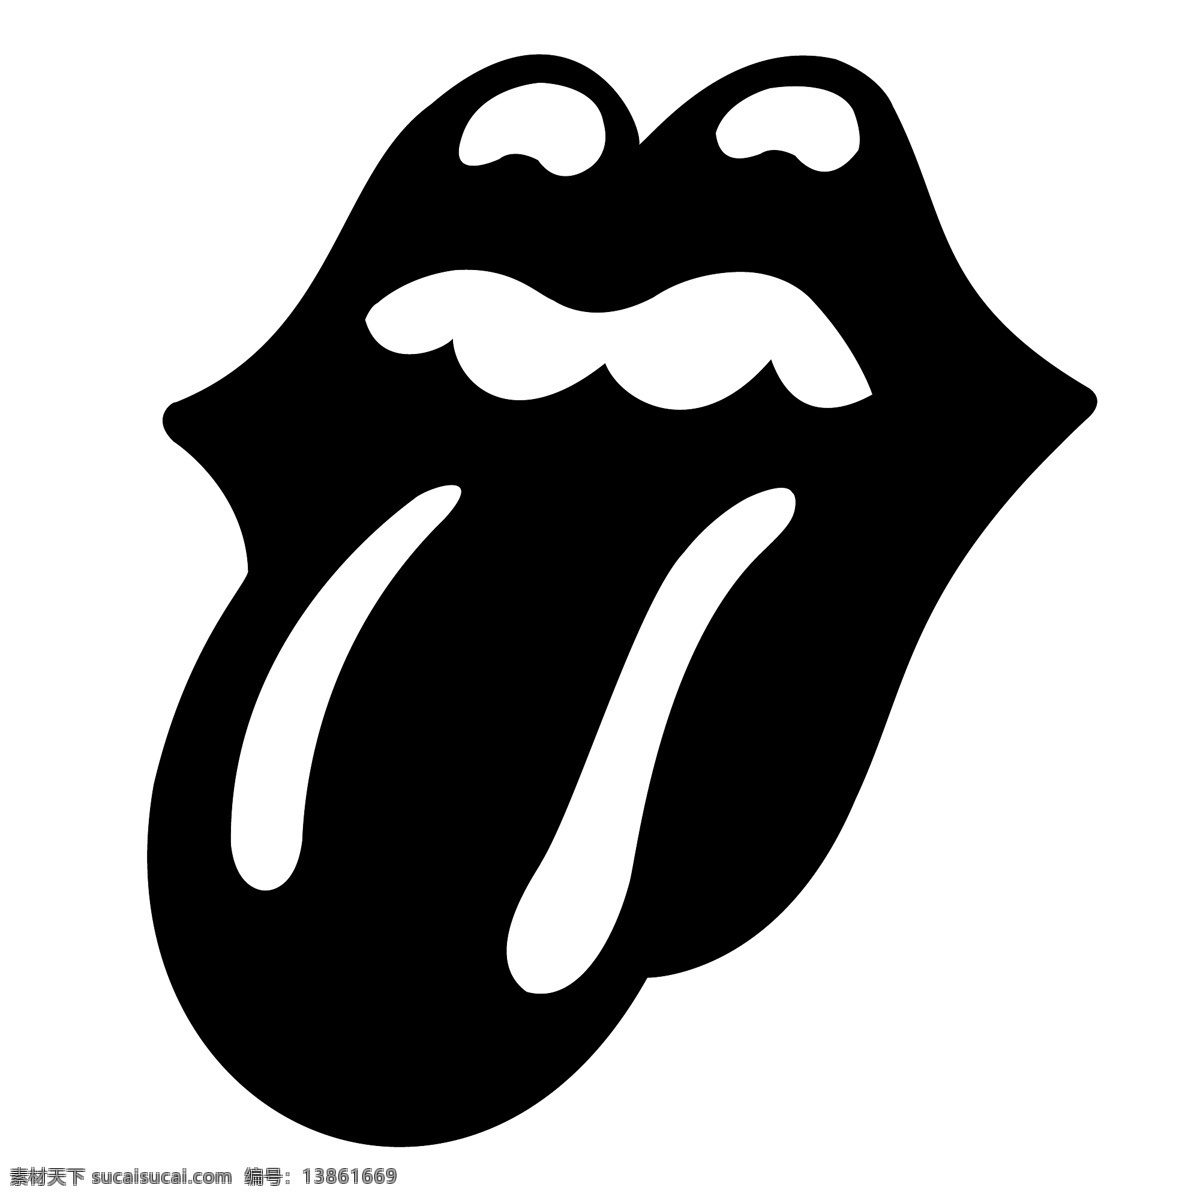 滚石 乐队 舌头 滚动 石头 滚动的石头 石头的舌头 滚石的舌头 矢量 舌 舌头的标志 滚石旗滚石舌 舌头免费下载 向量的舌头 矢量图 建筑家居